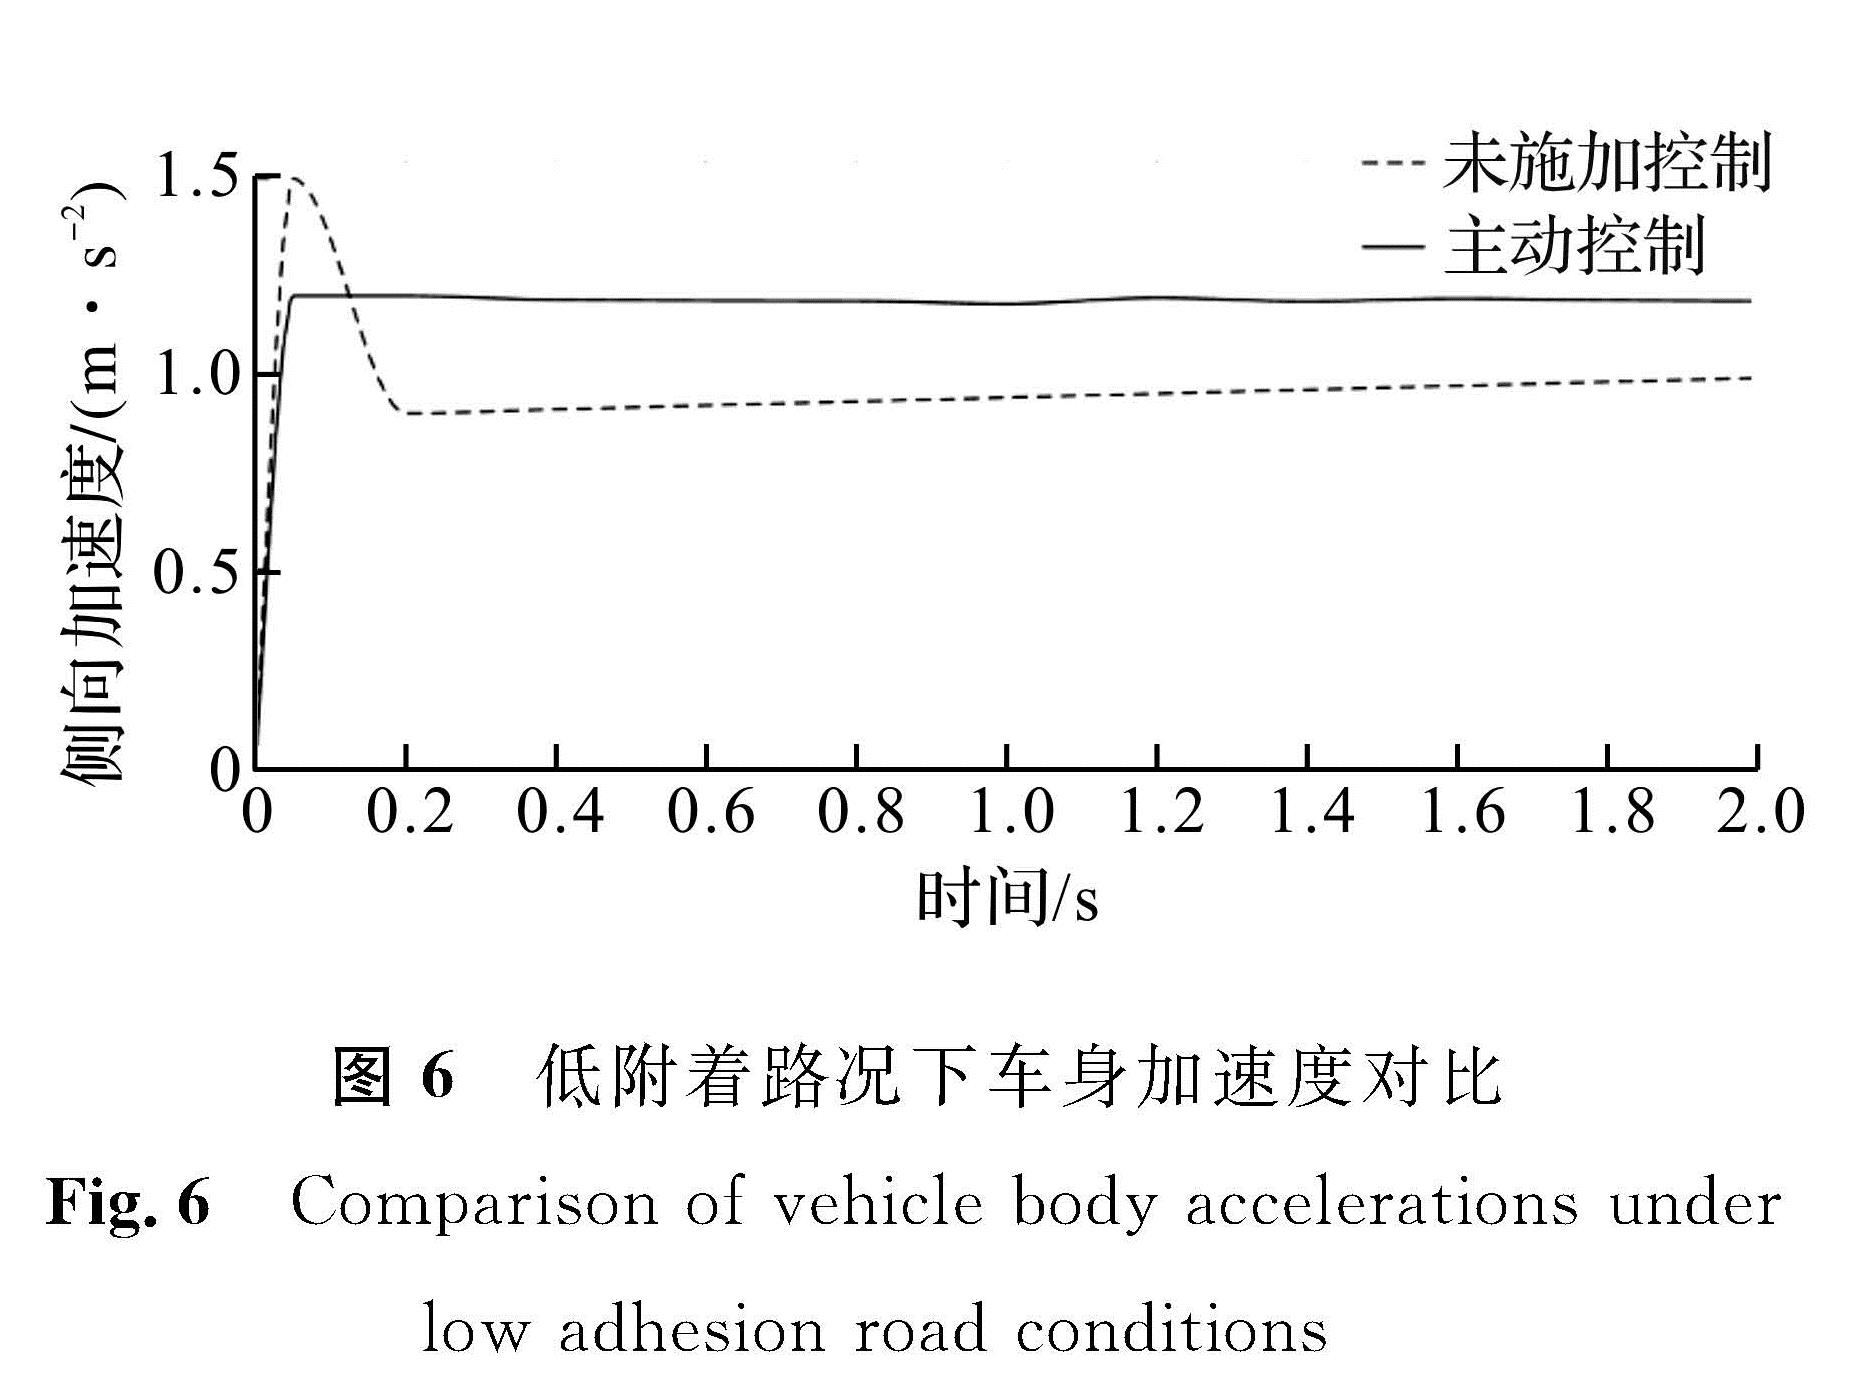 图6 低附着路况下车身加速度对比<br/>Fig.6 Comparison of vehicle body accelerations under low adhesion road conditions